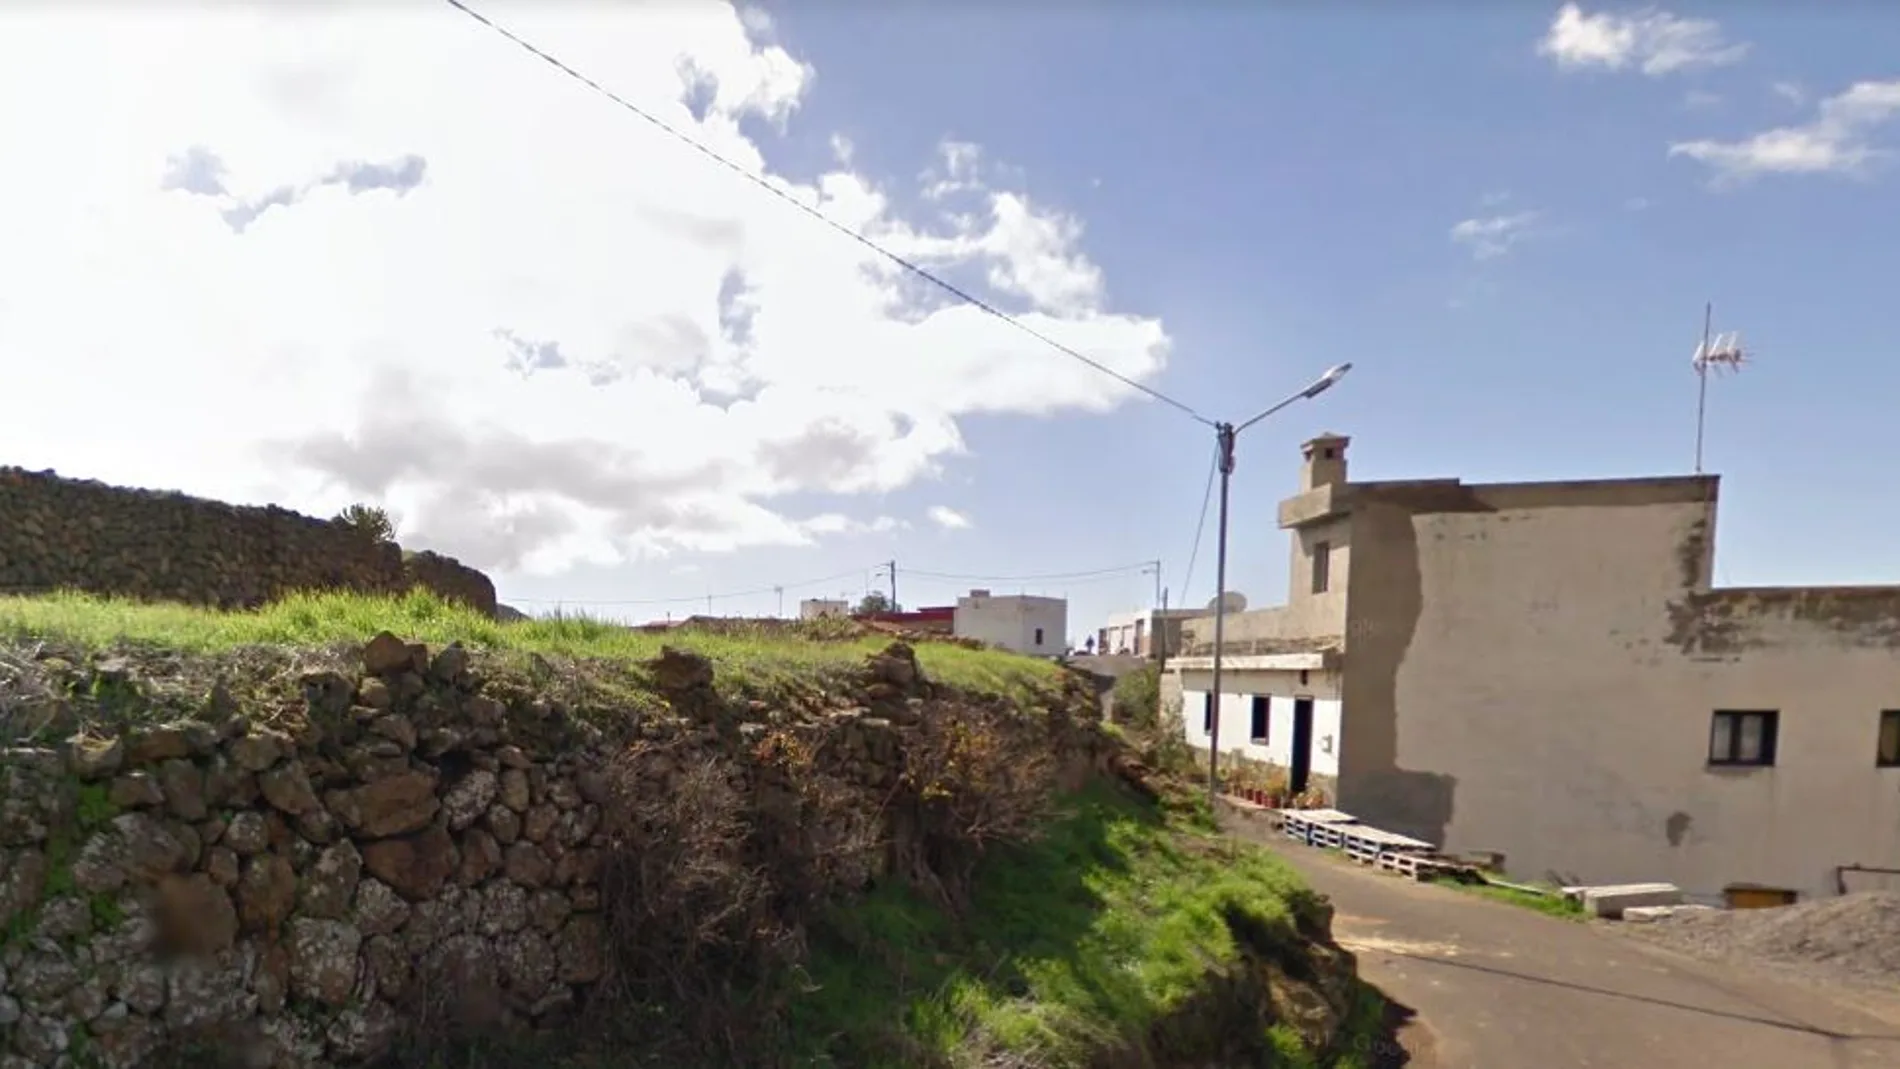 Los hechos sucedieron en el municipio de Ifonche, en la isla de Tenerife